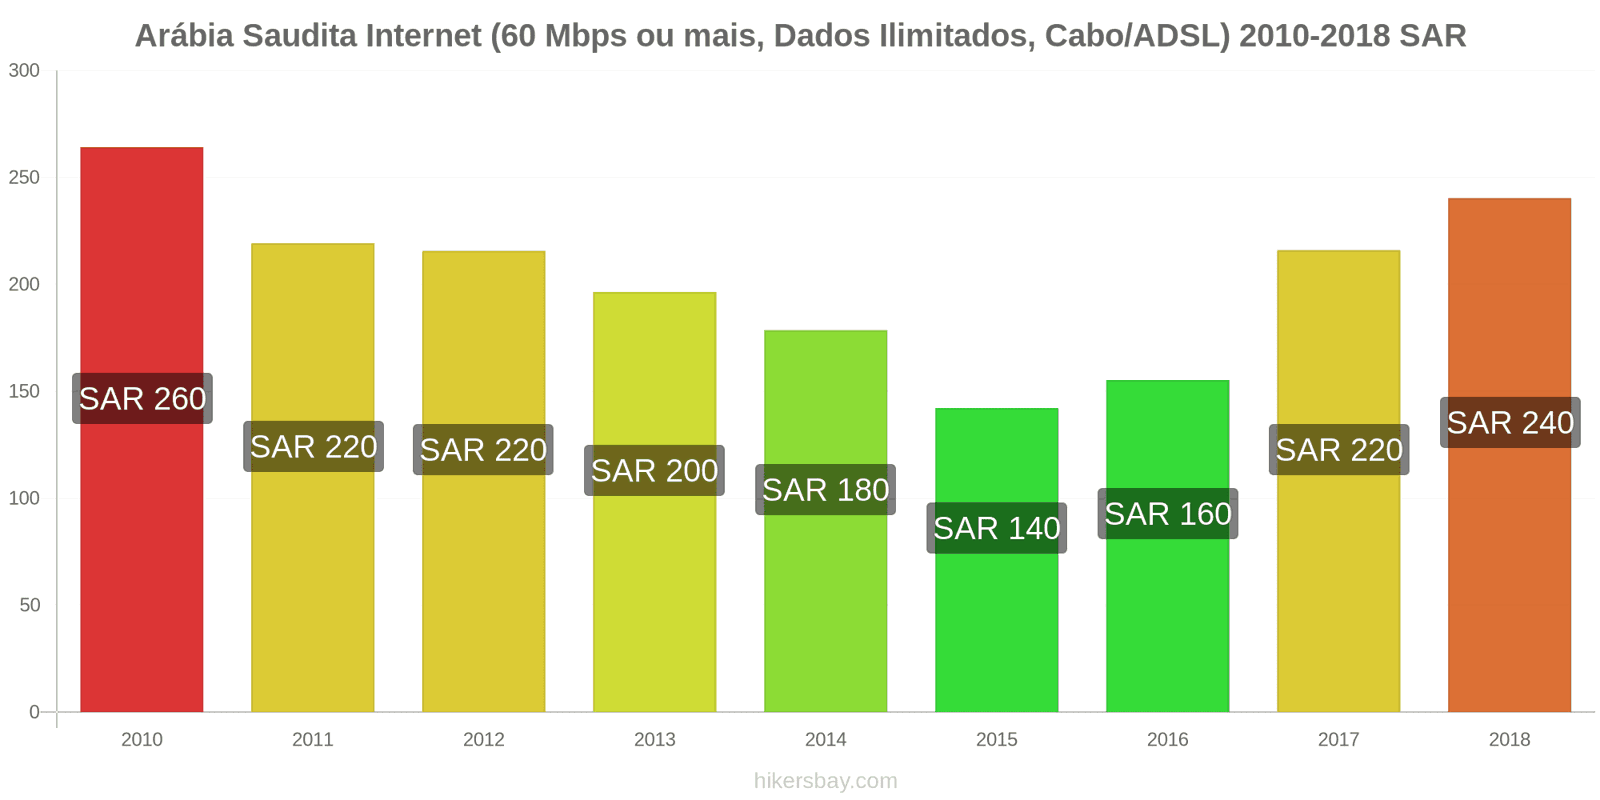 Arábia Saudita mudanças de preços Internet (60 Mbps ou mais, dados ilimitados, cabo/ADSL) hikersbay.com